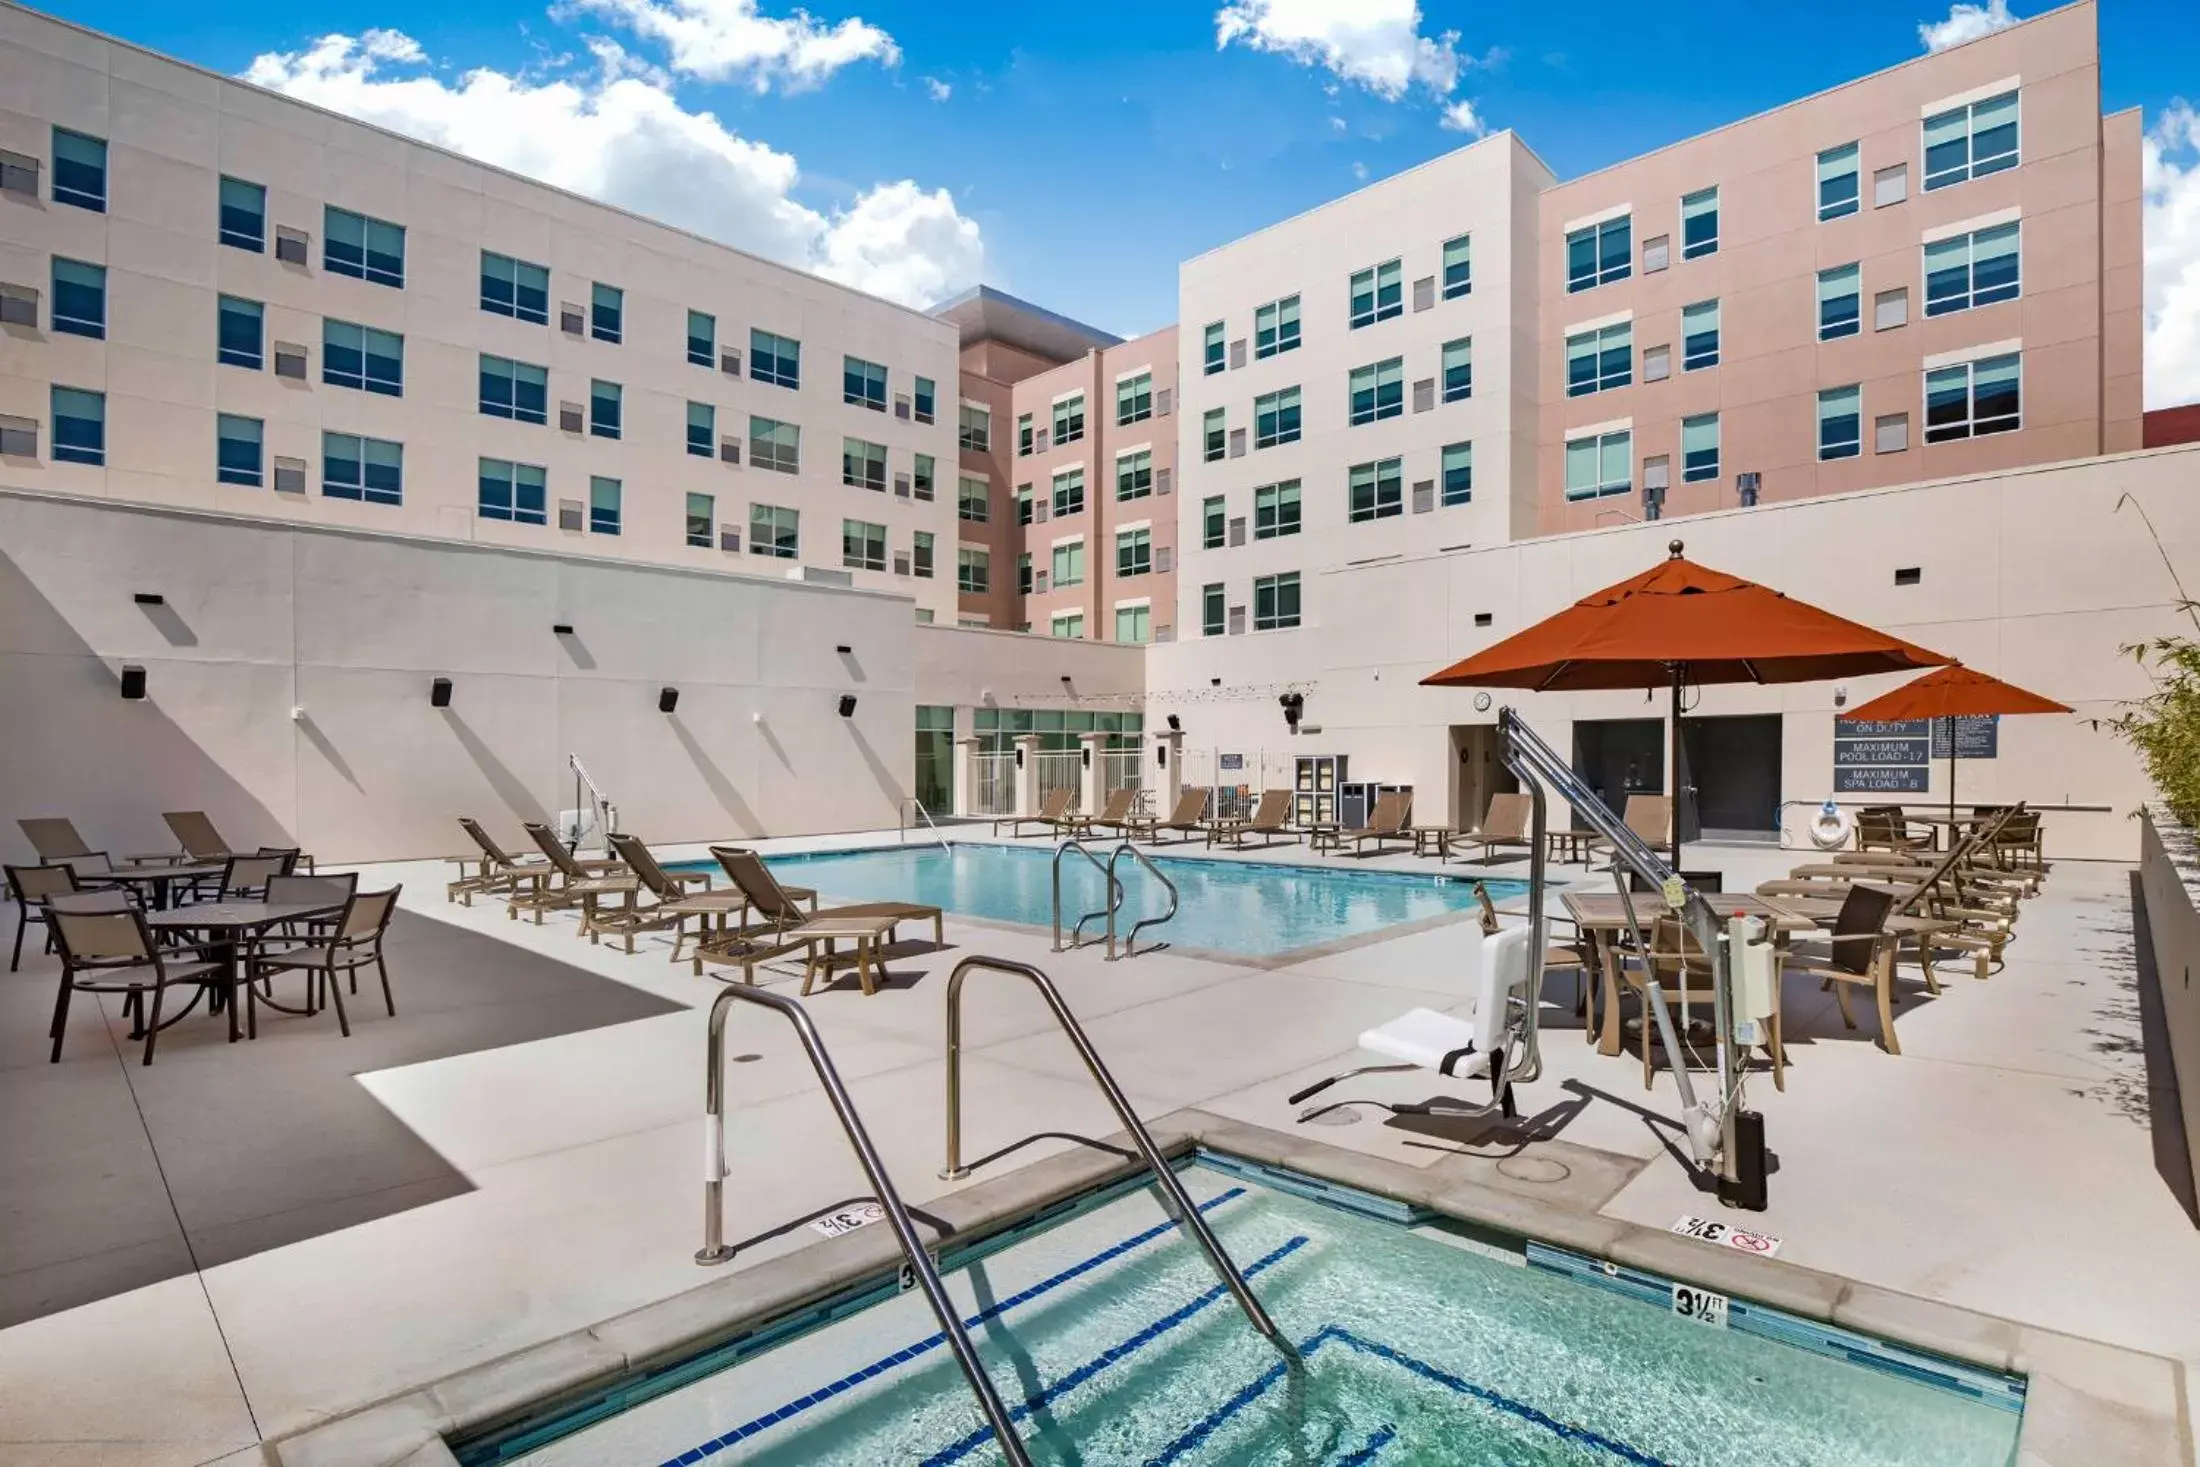 Swimming Pool in Hyatt House LA - University Medical Center